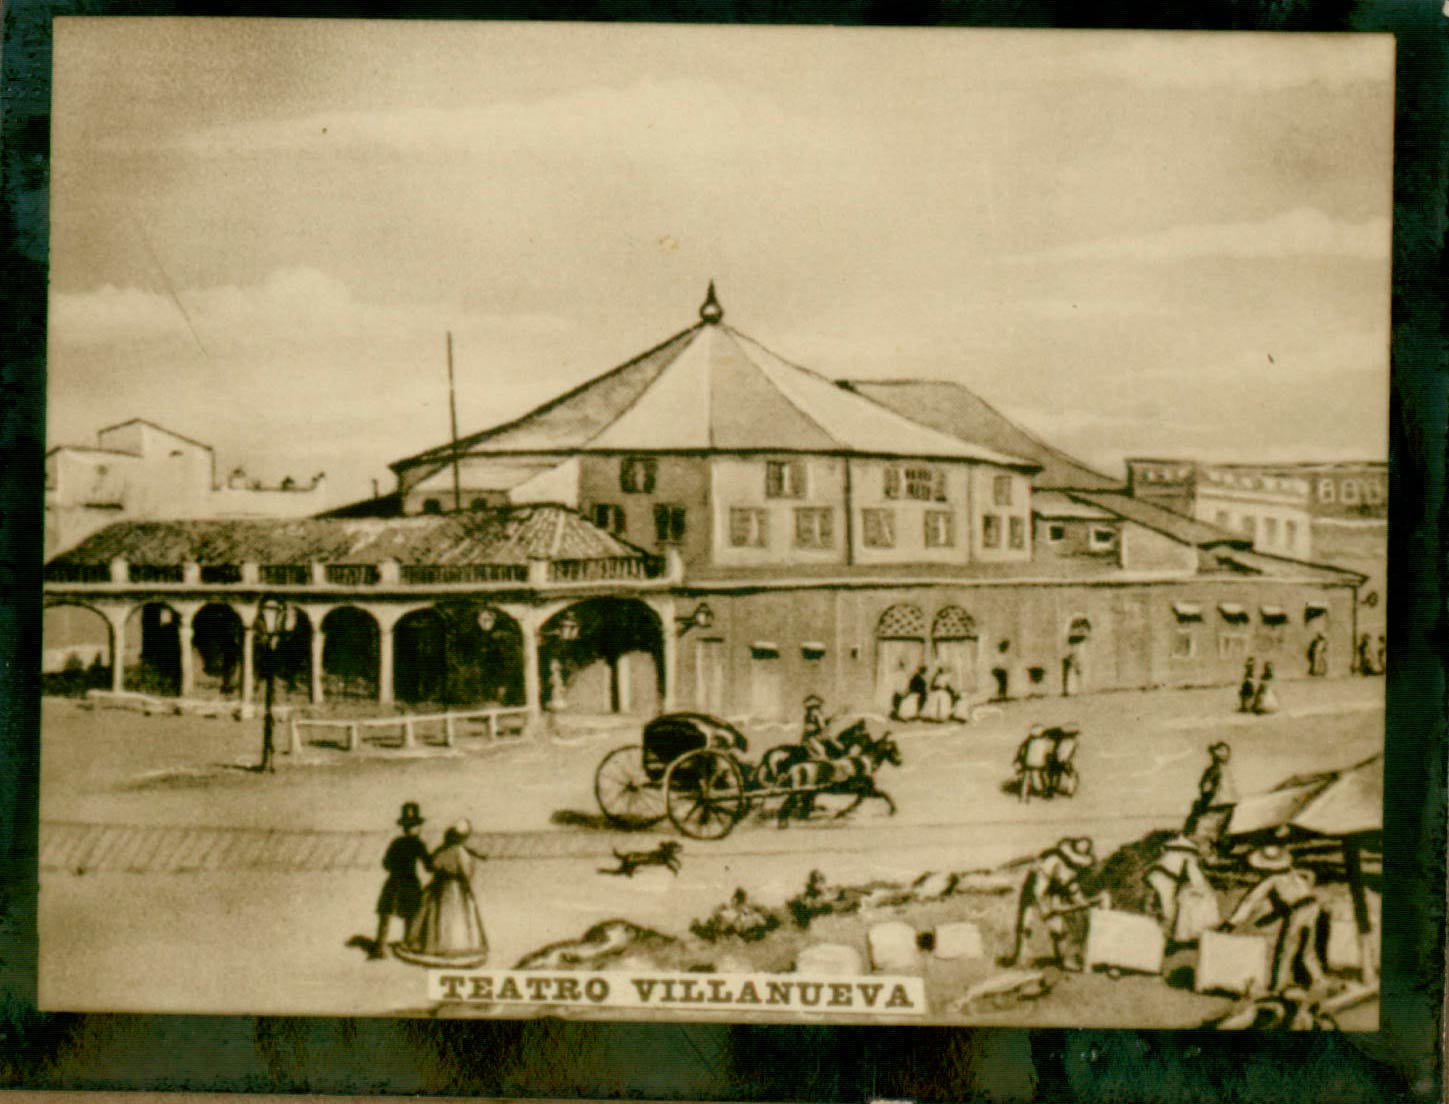 Teatro VIllanueva 1860